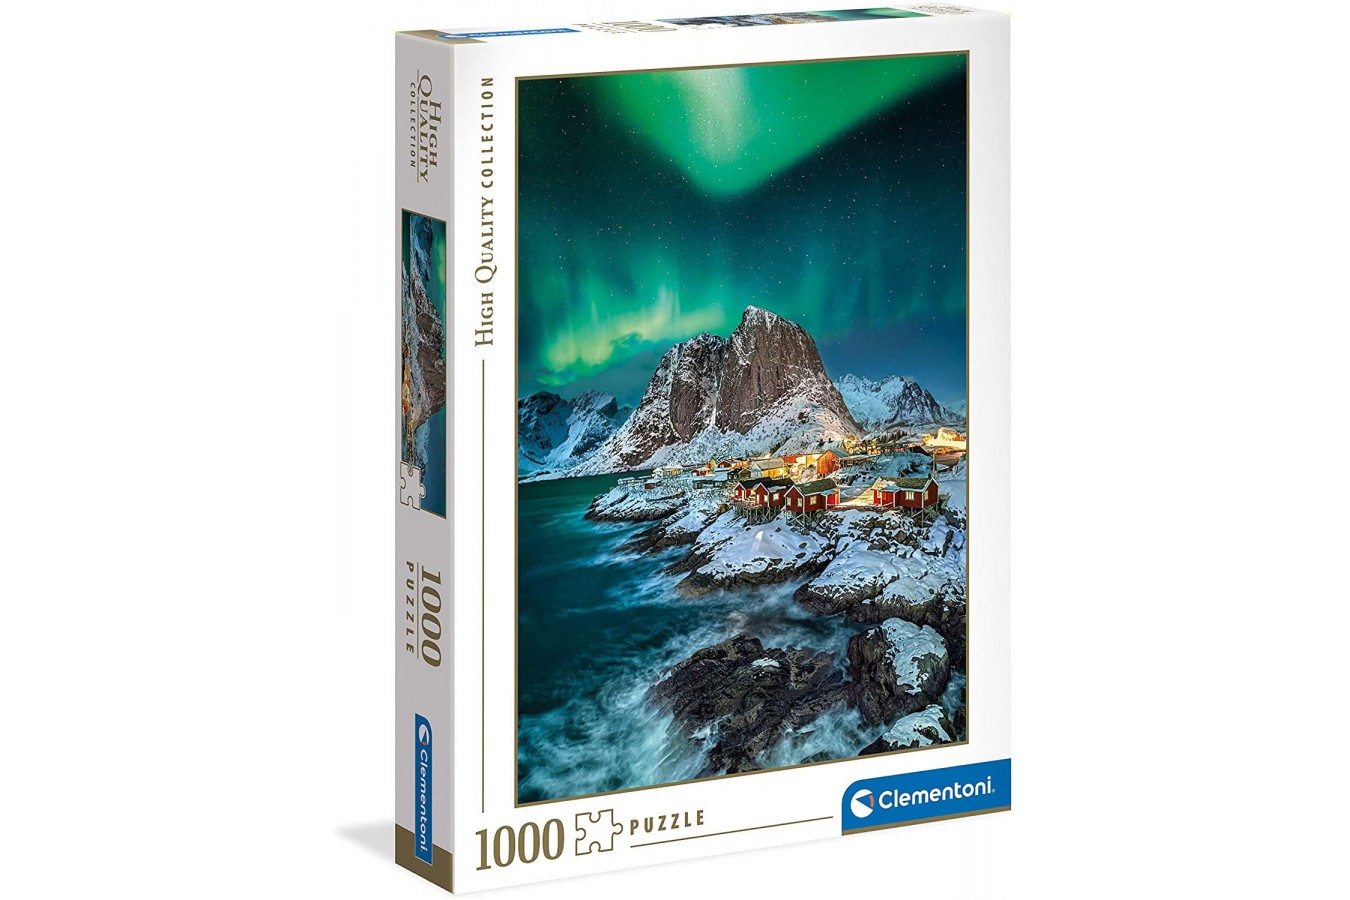 Puzzle 1000 piese Clementoni - Lofoten Islands (Clementoni-39601)